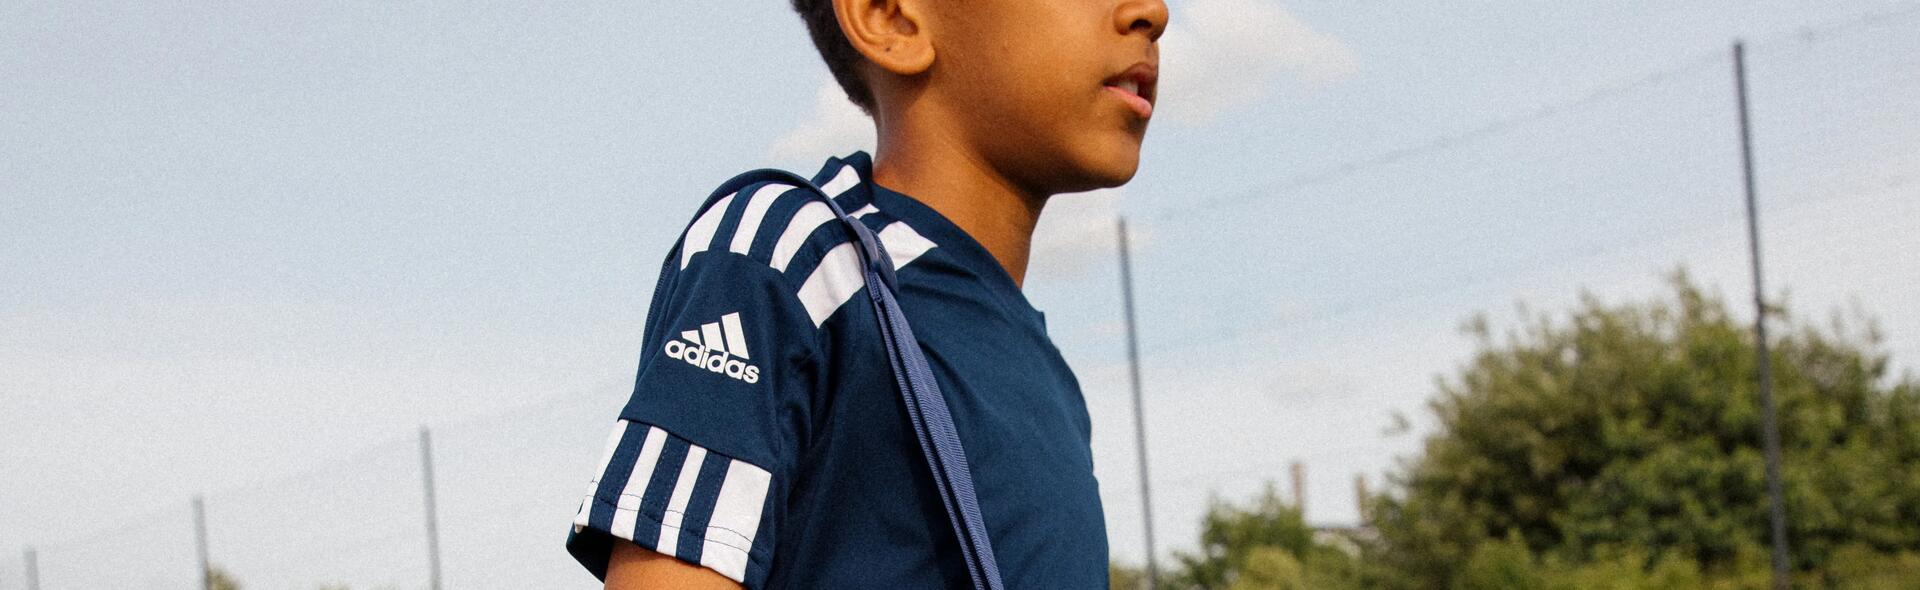 chłopiec idący po murawie zw stroju piłkarskim z torbą piłkarską na ramieniu